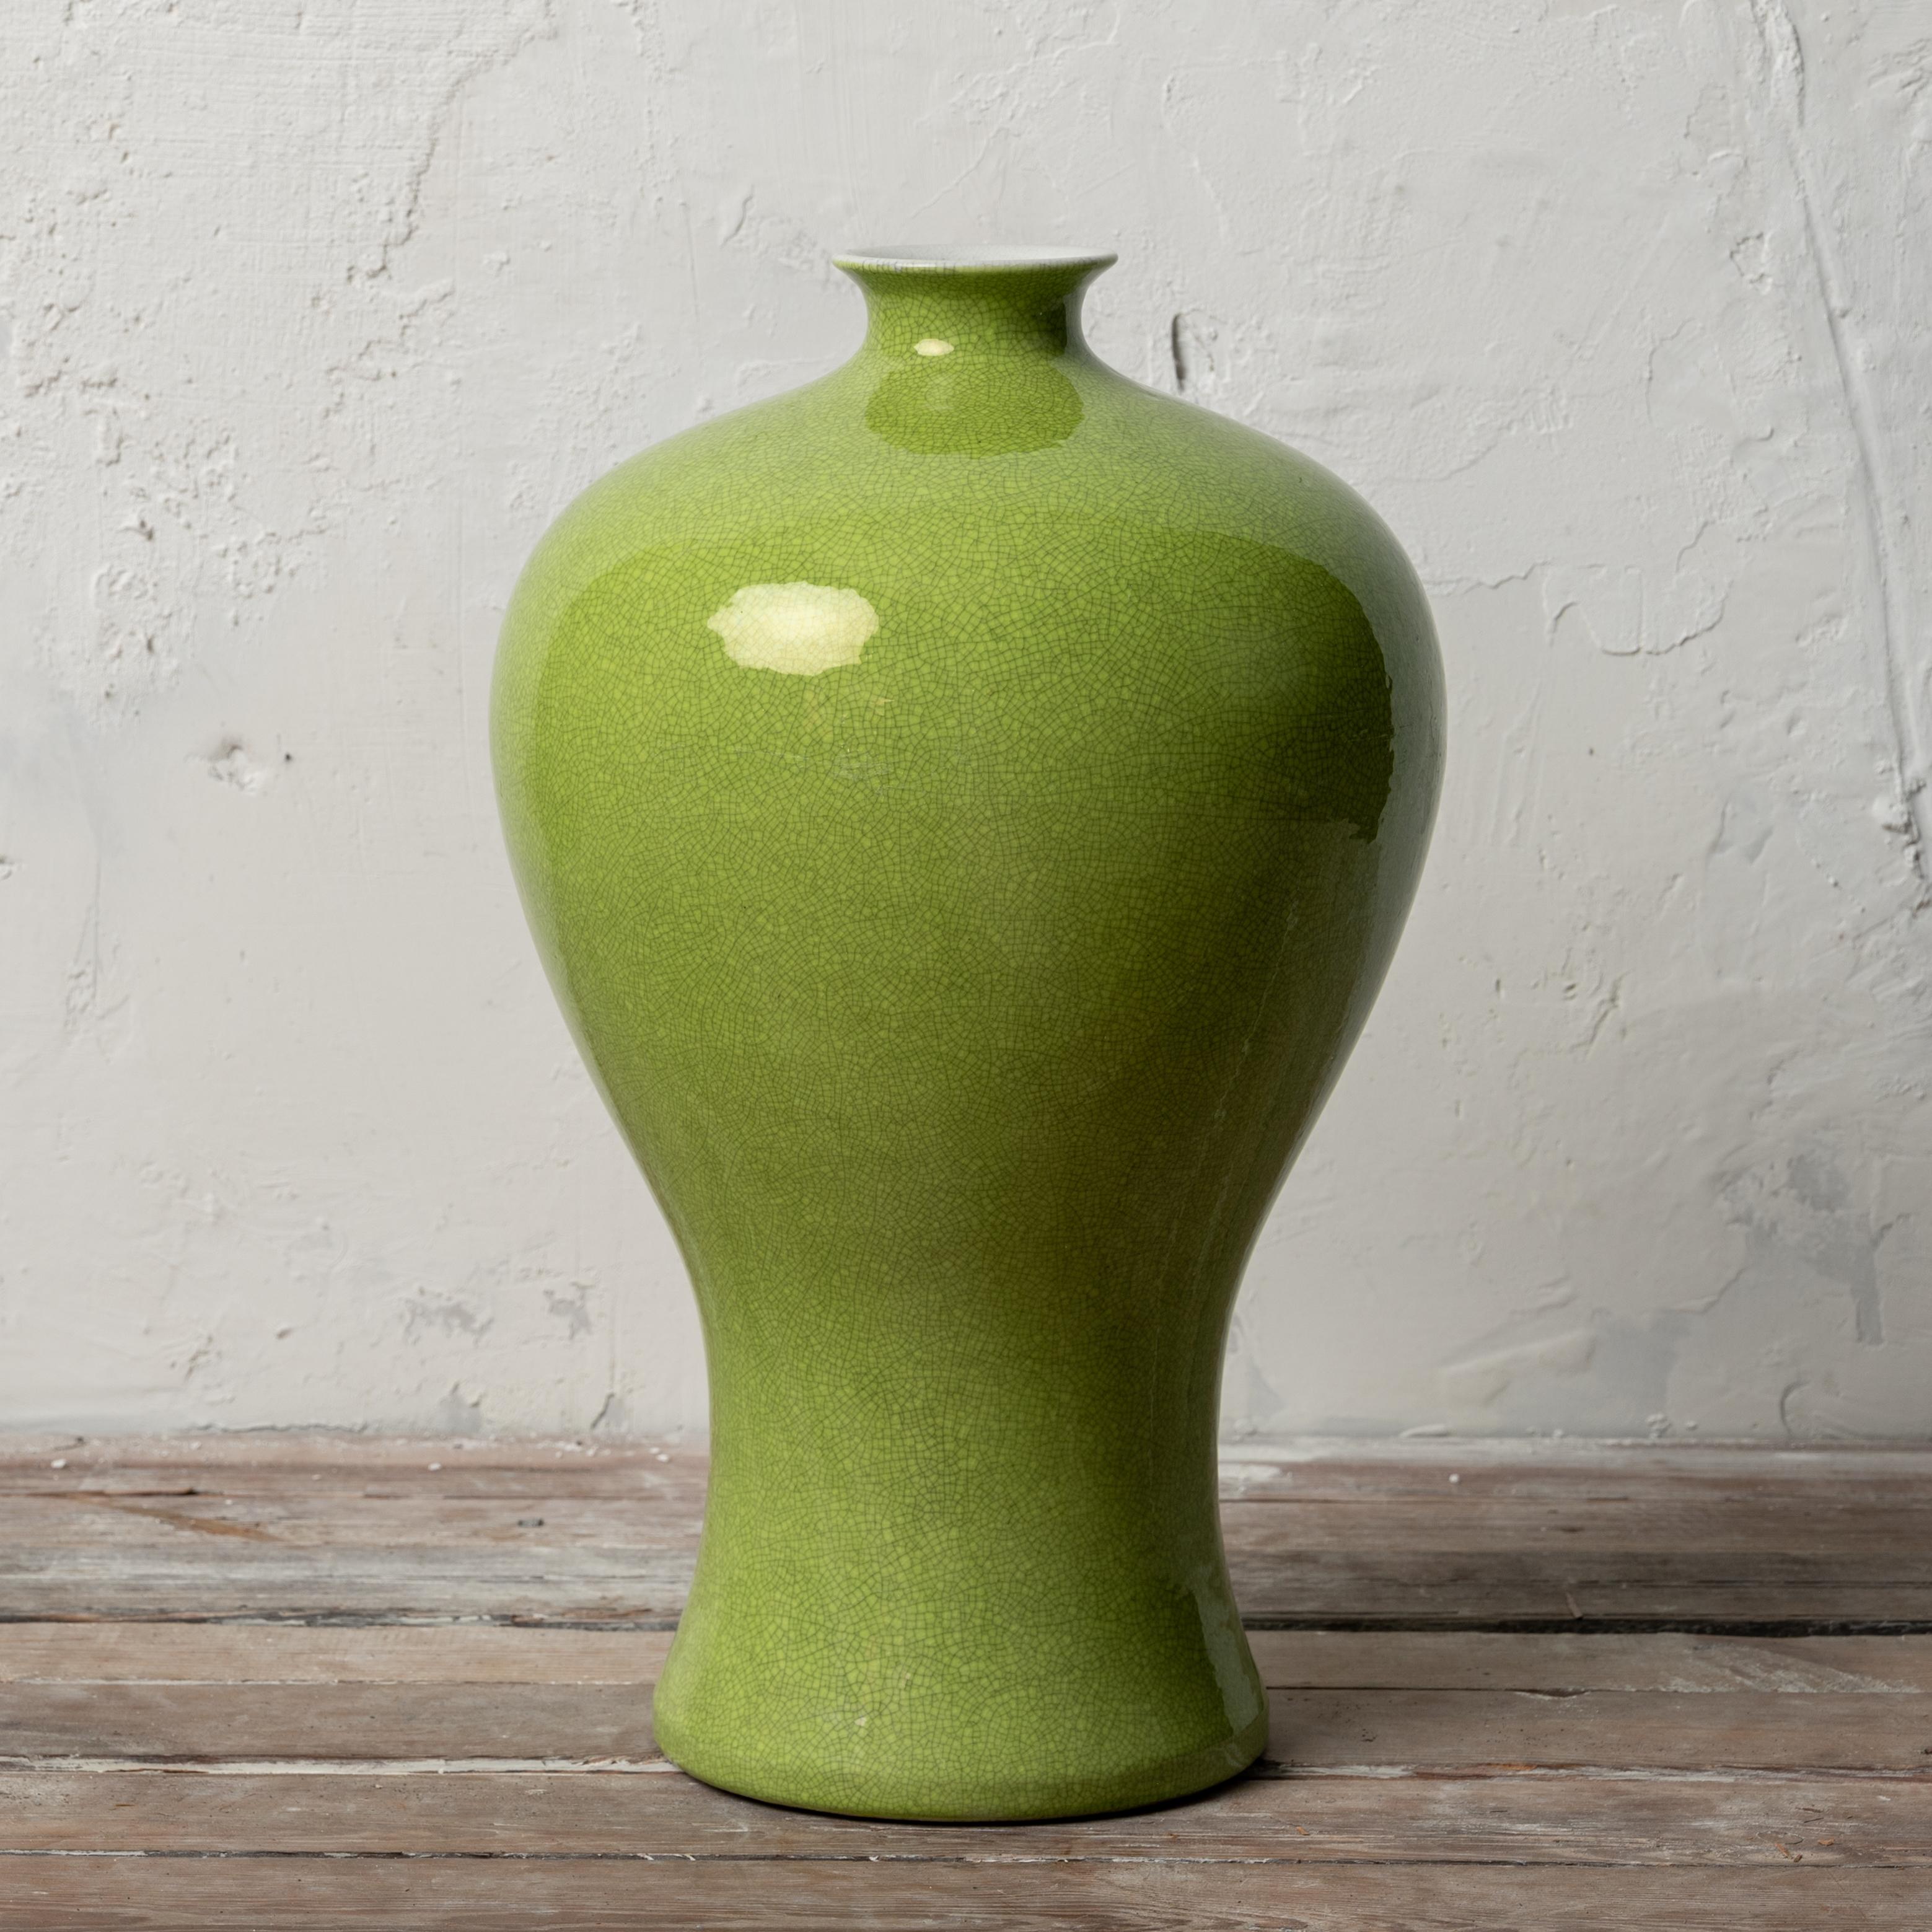 Vase meiping en porcelaine chinoise monochrome à glaçure vert tilleul craquelée, portant la marque apocryphe de Chenghua.

10 ½ pouces de large par 17 pouces de haut

